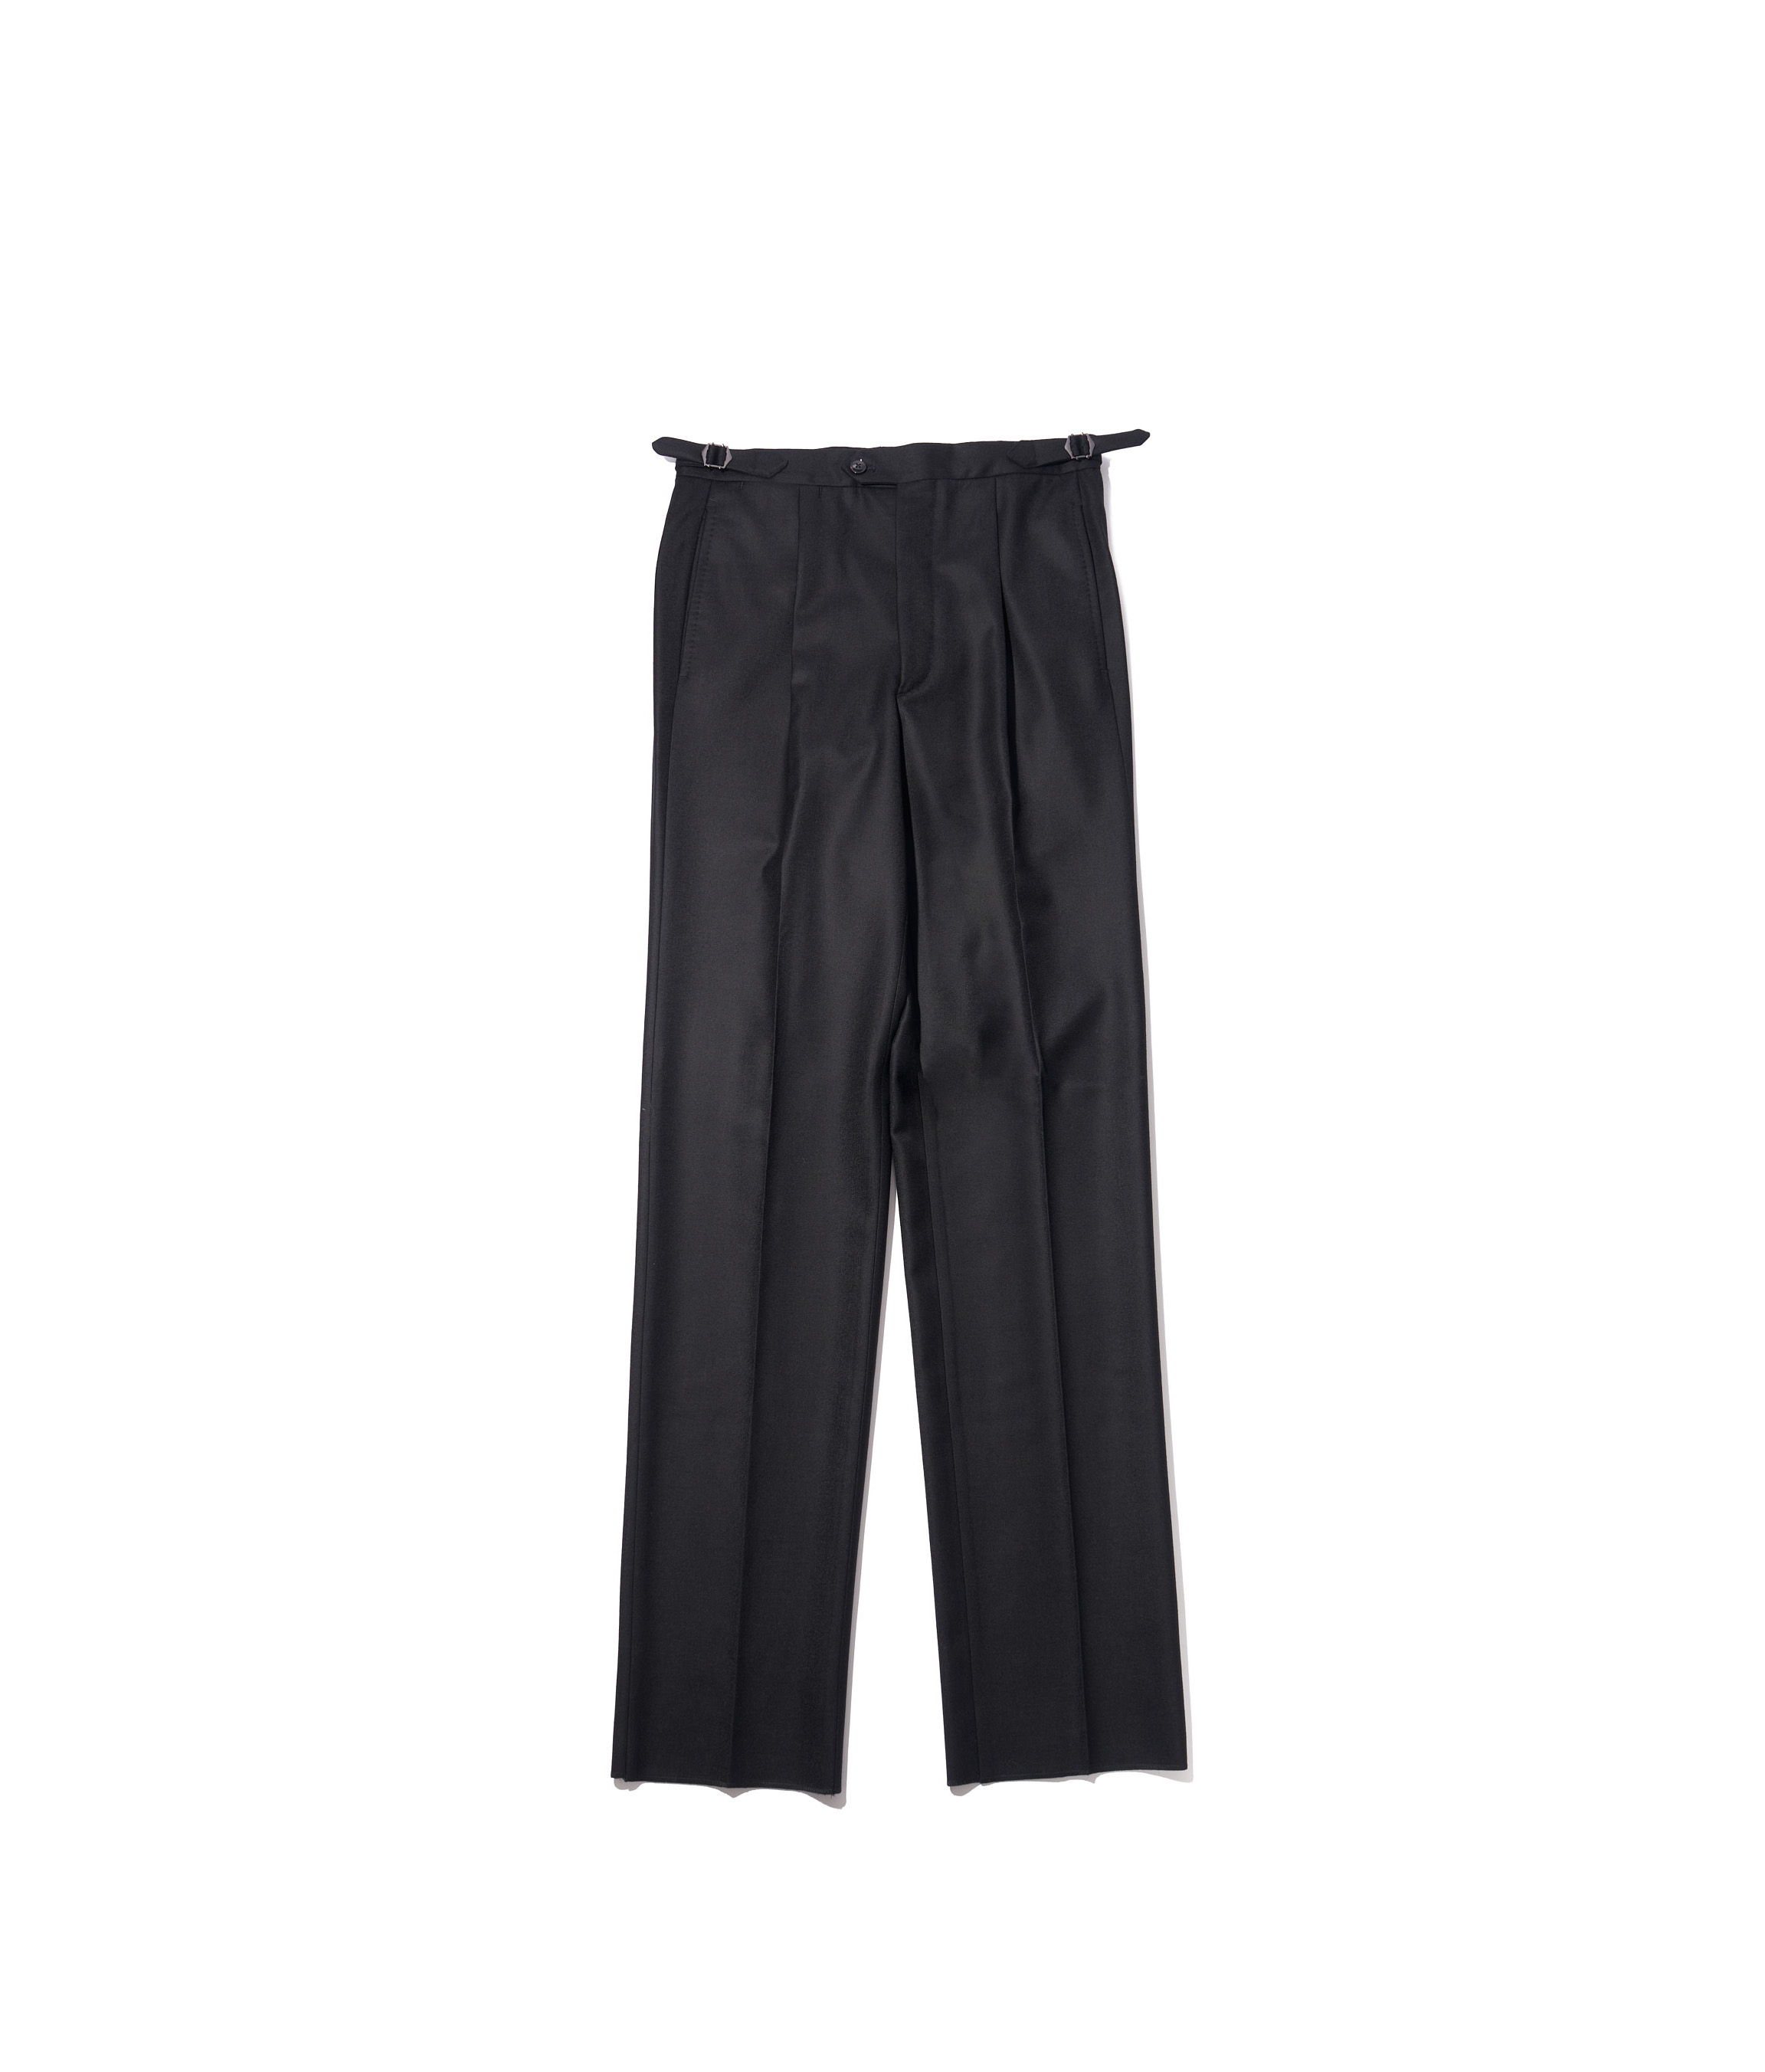 207 Single Pleat Trousers Black Wool Twill